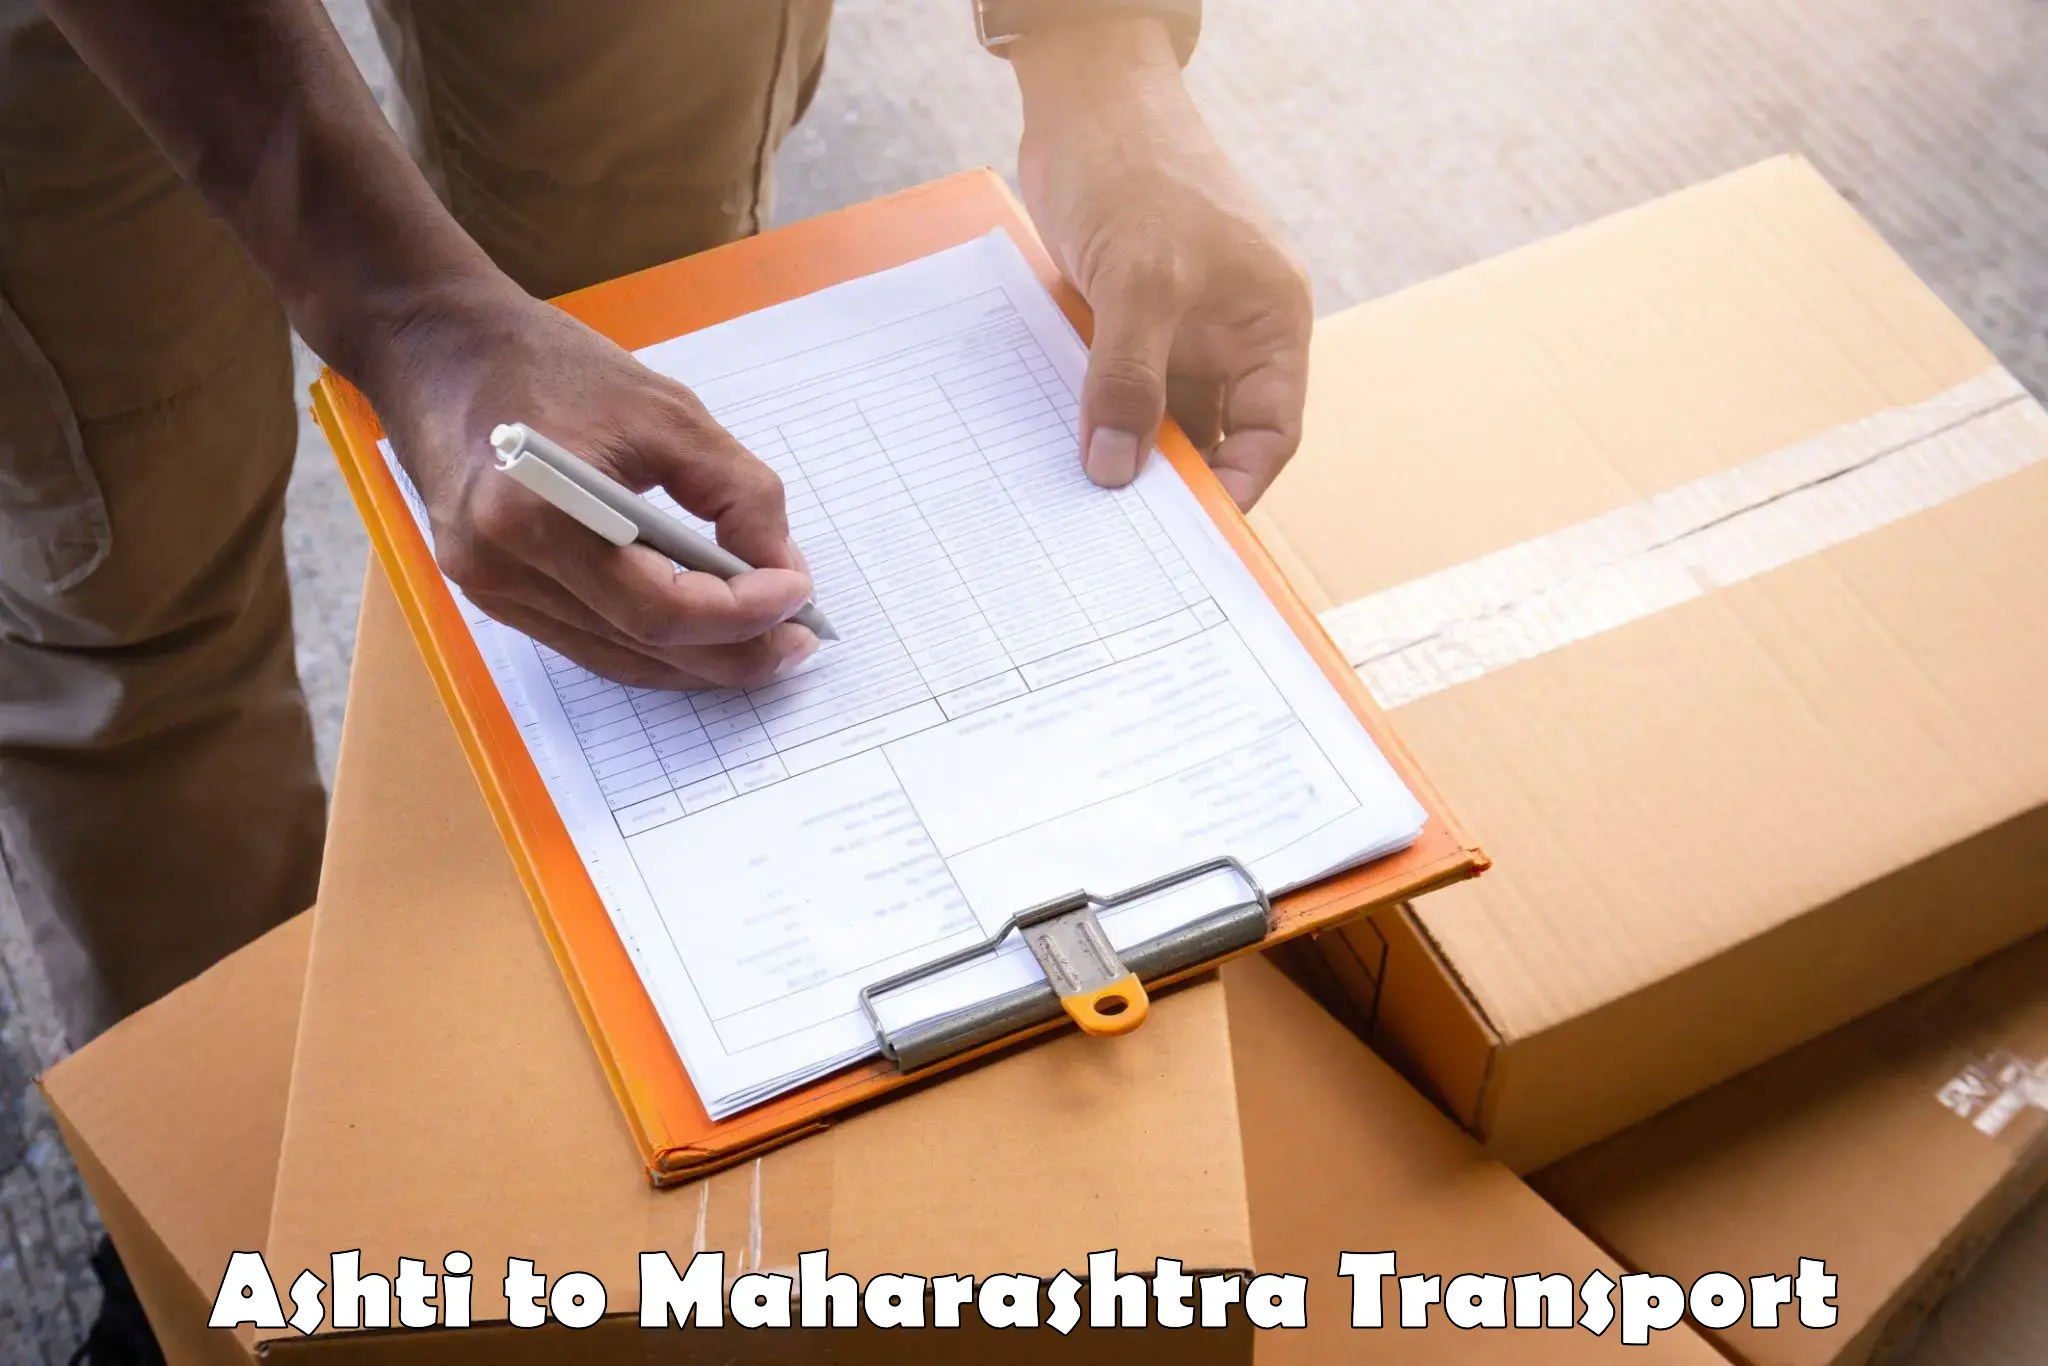 Interstate transport services Ashti to Tata Institute of Social Sciences Mumbai